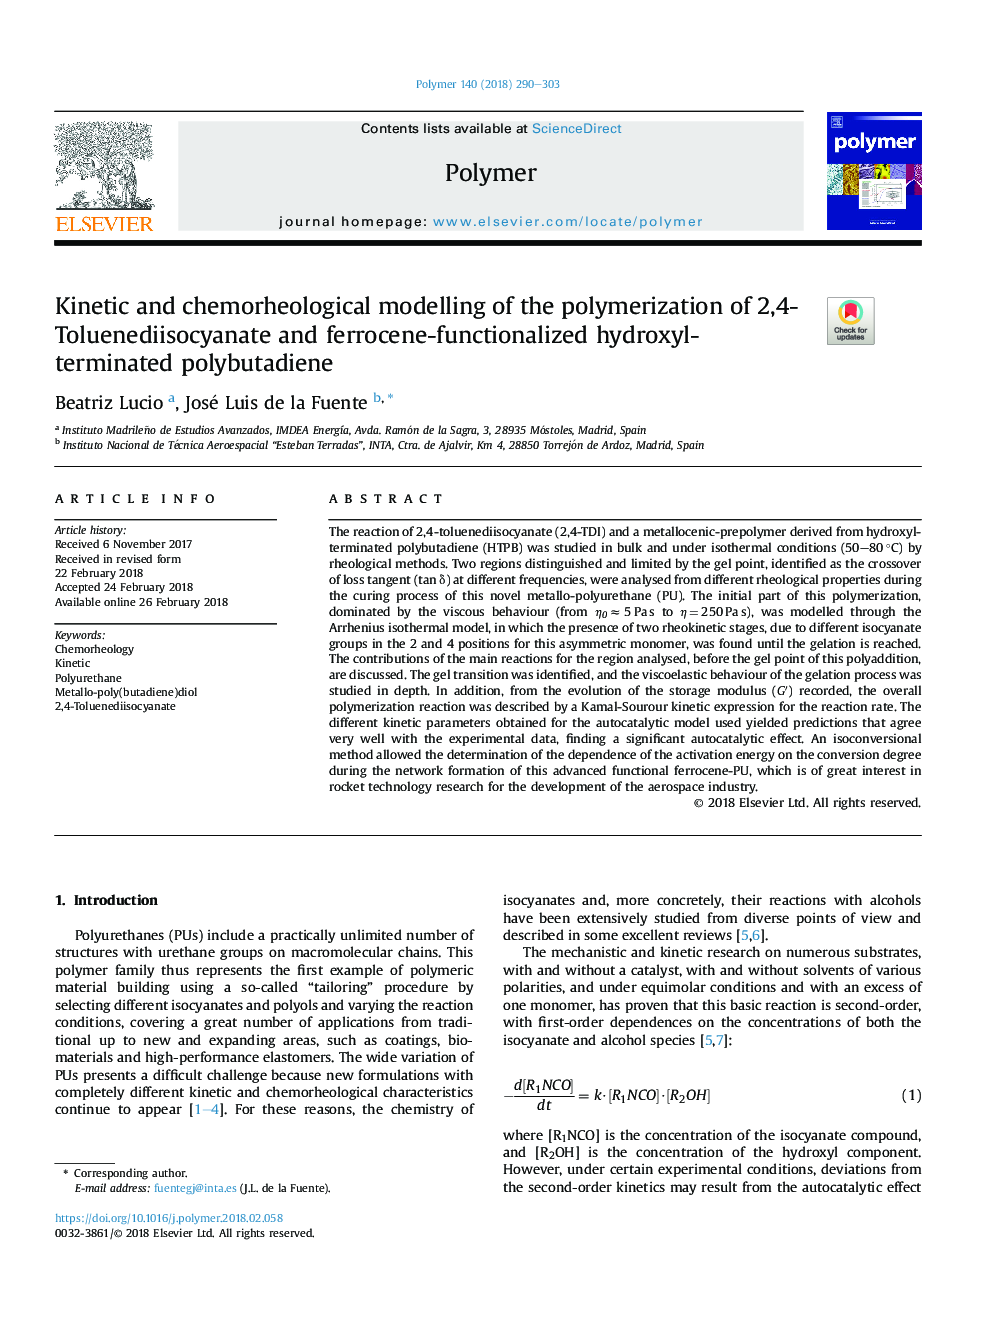 مدلسازی سینتیک و شیمی درمانی پلیمریزاسیون پلی اتیلن 2،4-تولویدیدسیوسیانات و پلی اتیلن فسفات پلی اتیلن 